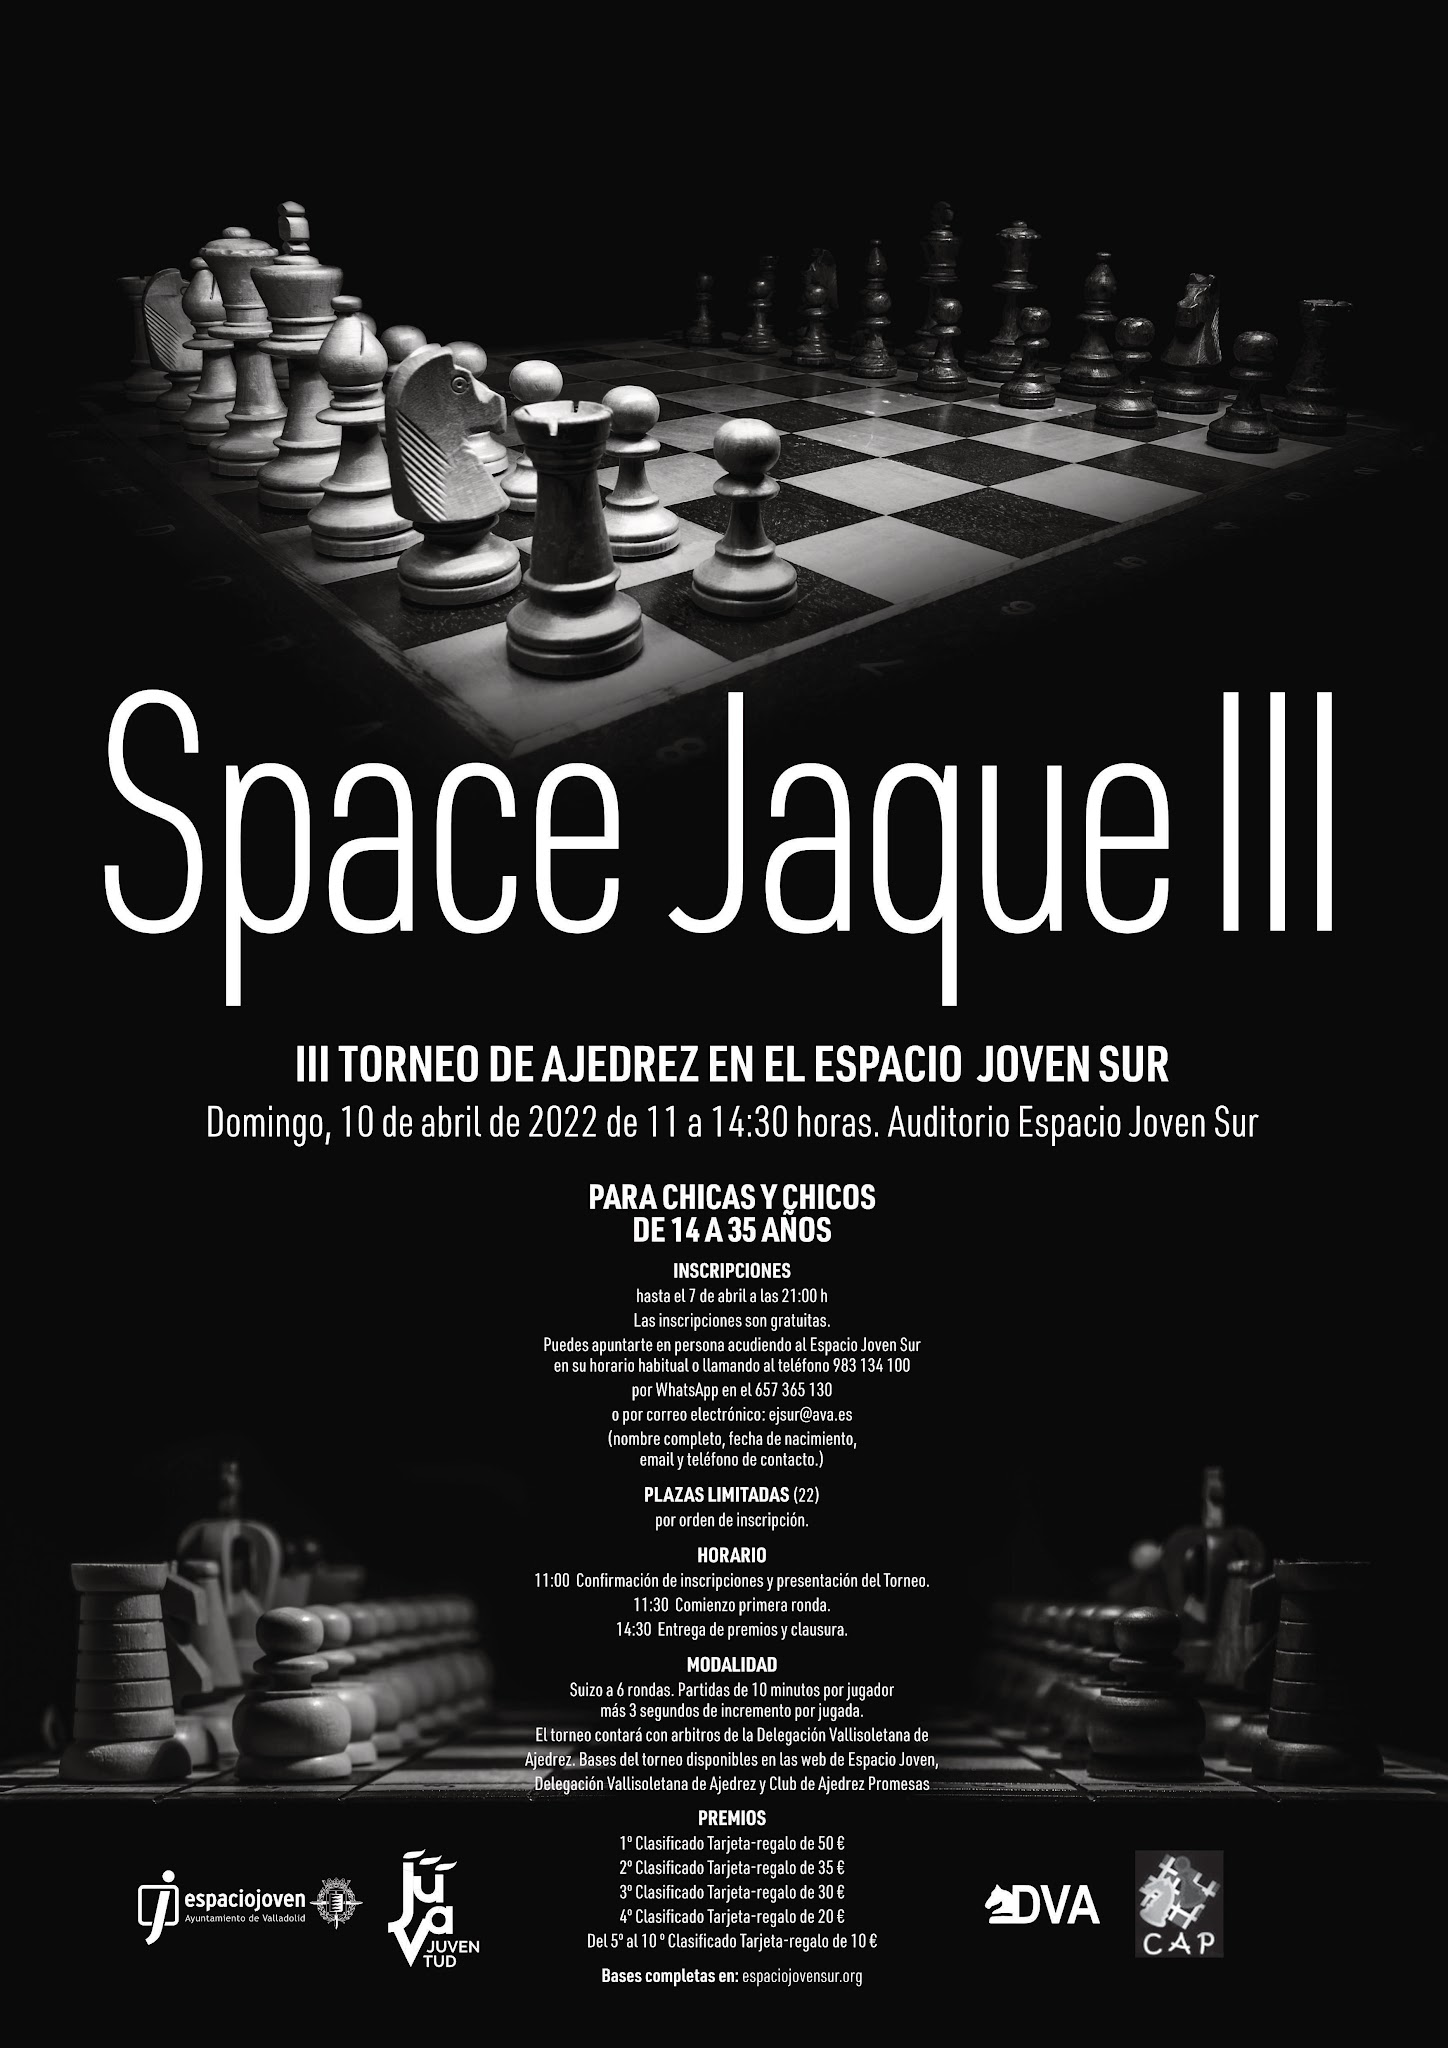 III Torneo de Ajedrez Space Jaque, organizado por el Espacio Joven Sur y el CAP Valladolid. Domingo 10 de abril 2022. 11:00 a 14:30